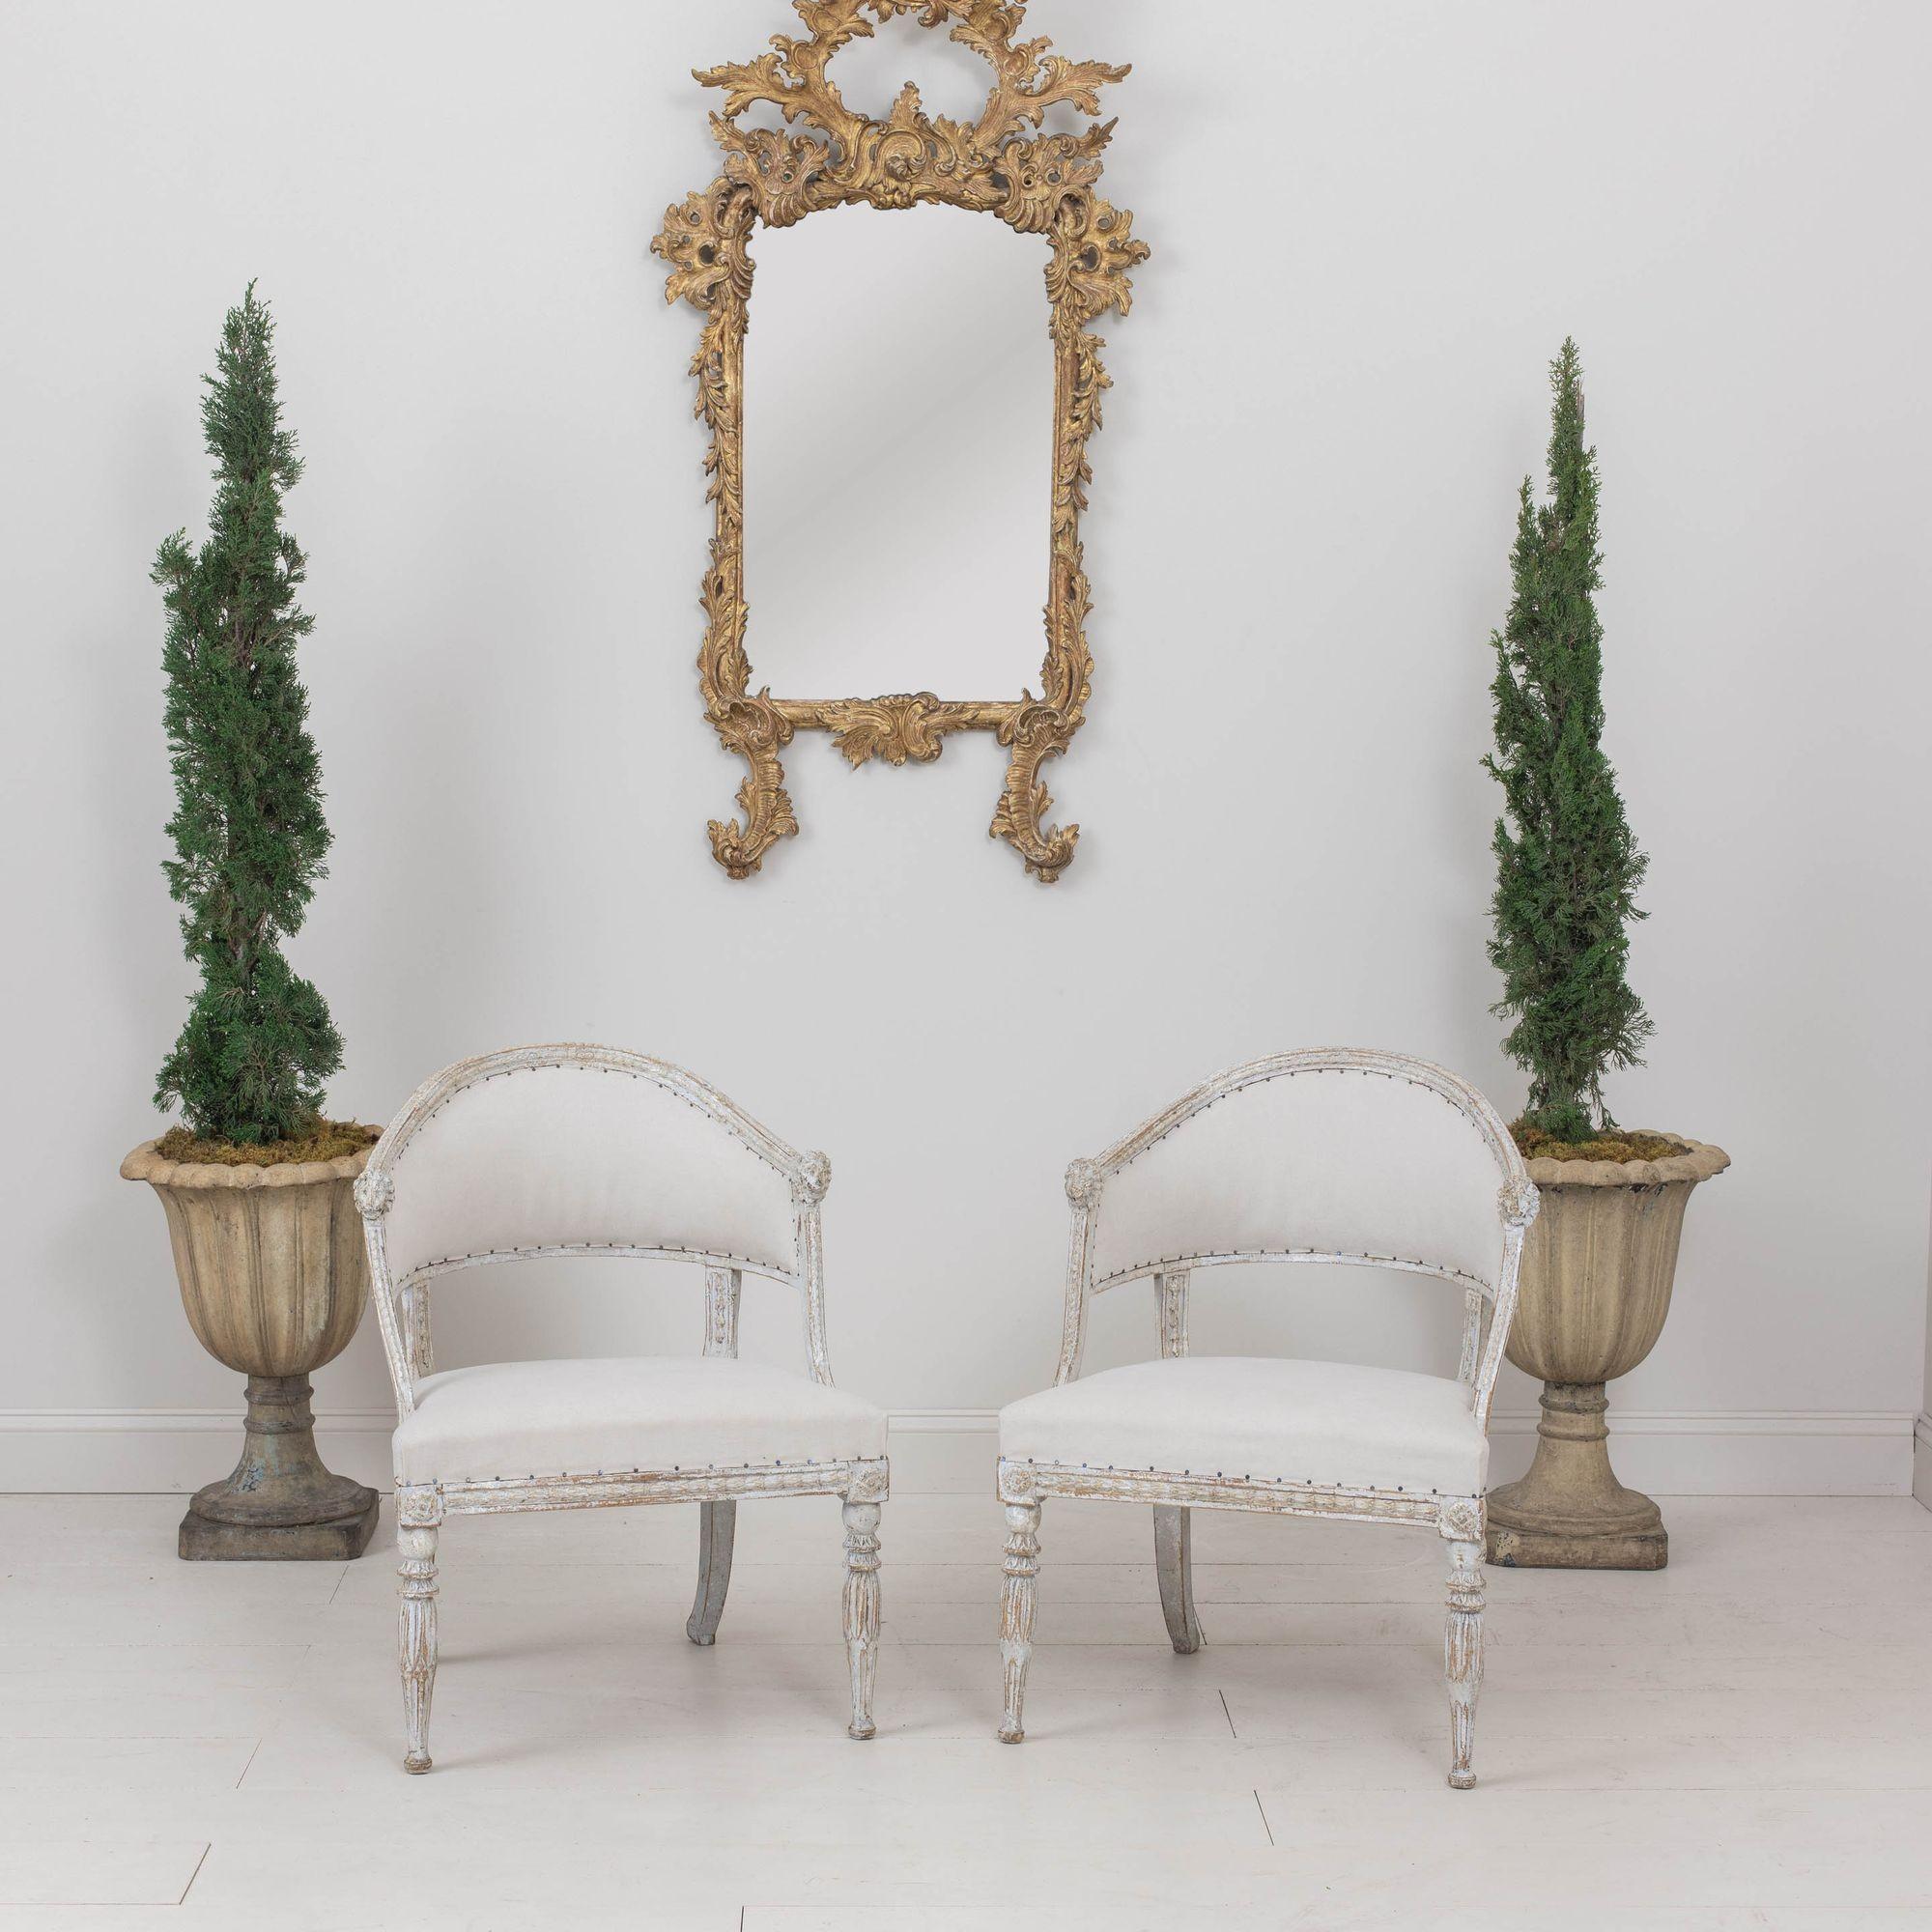 Paire de fauteuils suédois anciens à dossier en tonneau de la période gustavienne, vers 1810. Ces superbes chaises ont un dossier en forme de tonneau avec des sculptures en forme de tête de lion. Le cadre présente des fleurs en cloche sculptées et